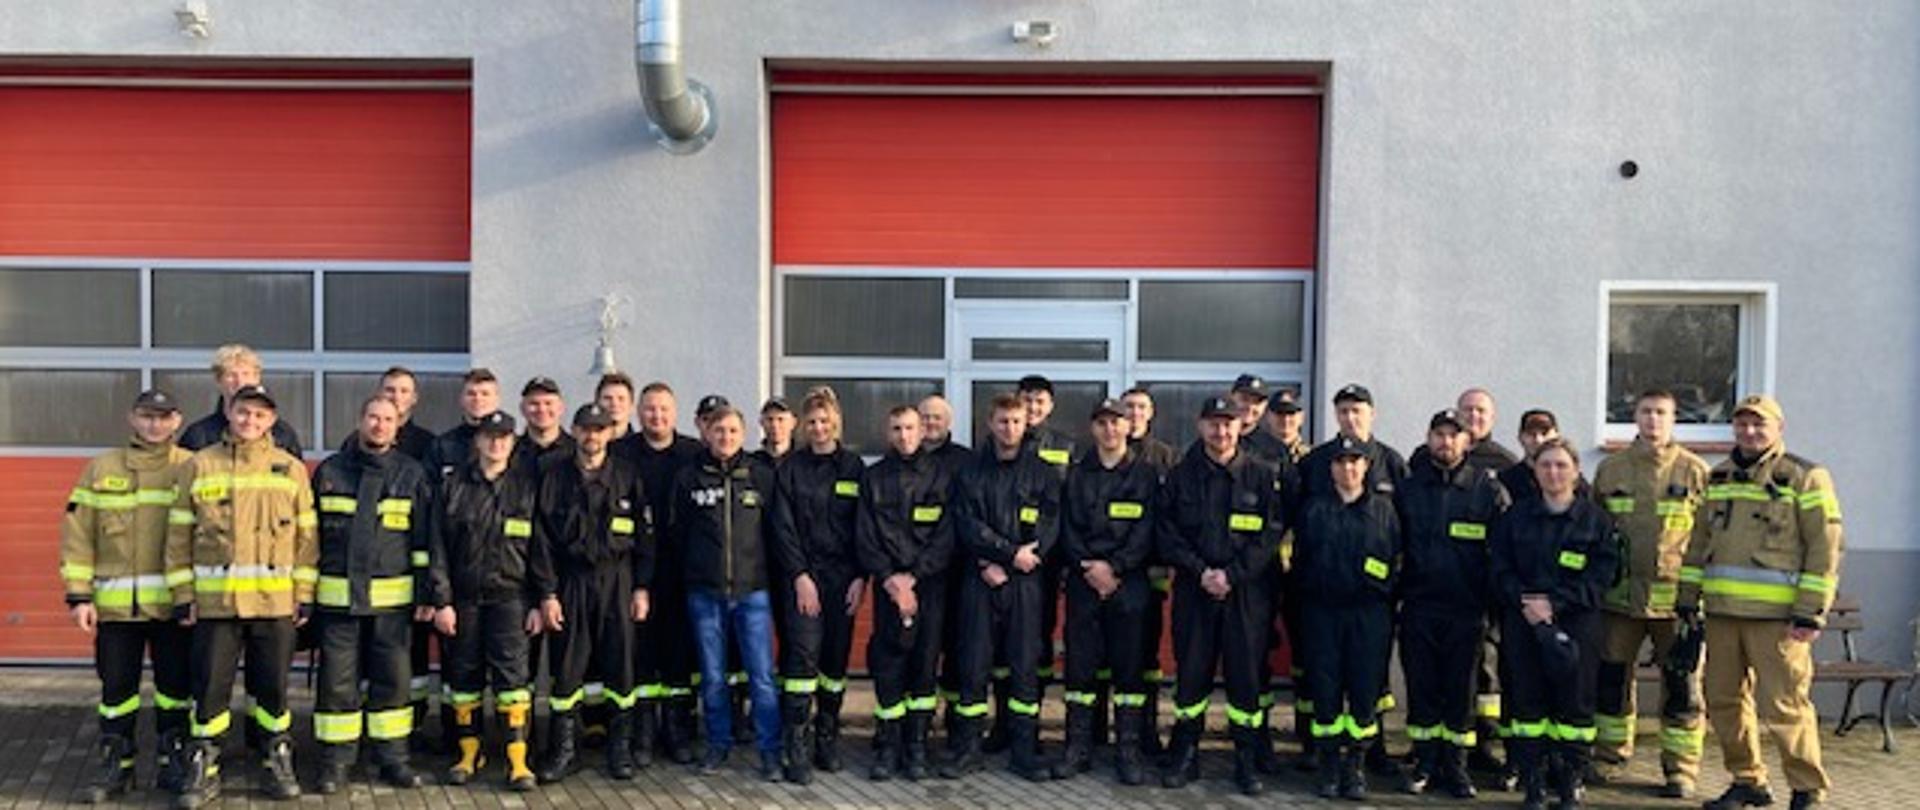 Zbiorowe zdjęcie kilkudziesięciu strażaków Ochotniczej straży pożarnej w mundurach koszarowych wraz z instruktorami pozują do zdjęcia na tle budynku Państwowej straży pożarnej w Sępólnie Krajeńskim